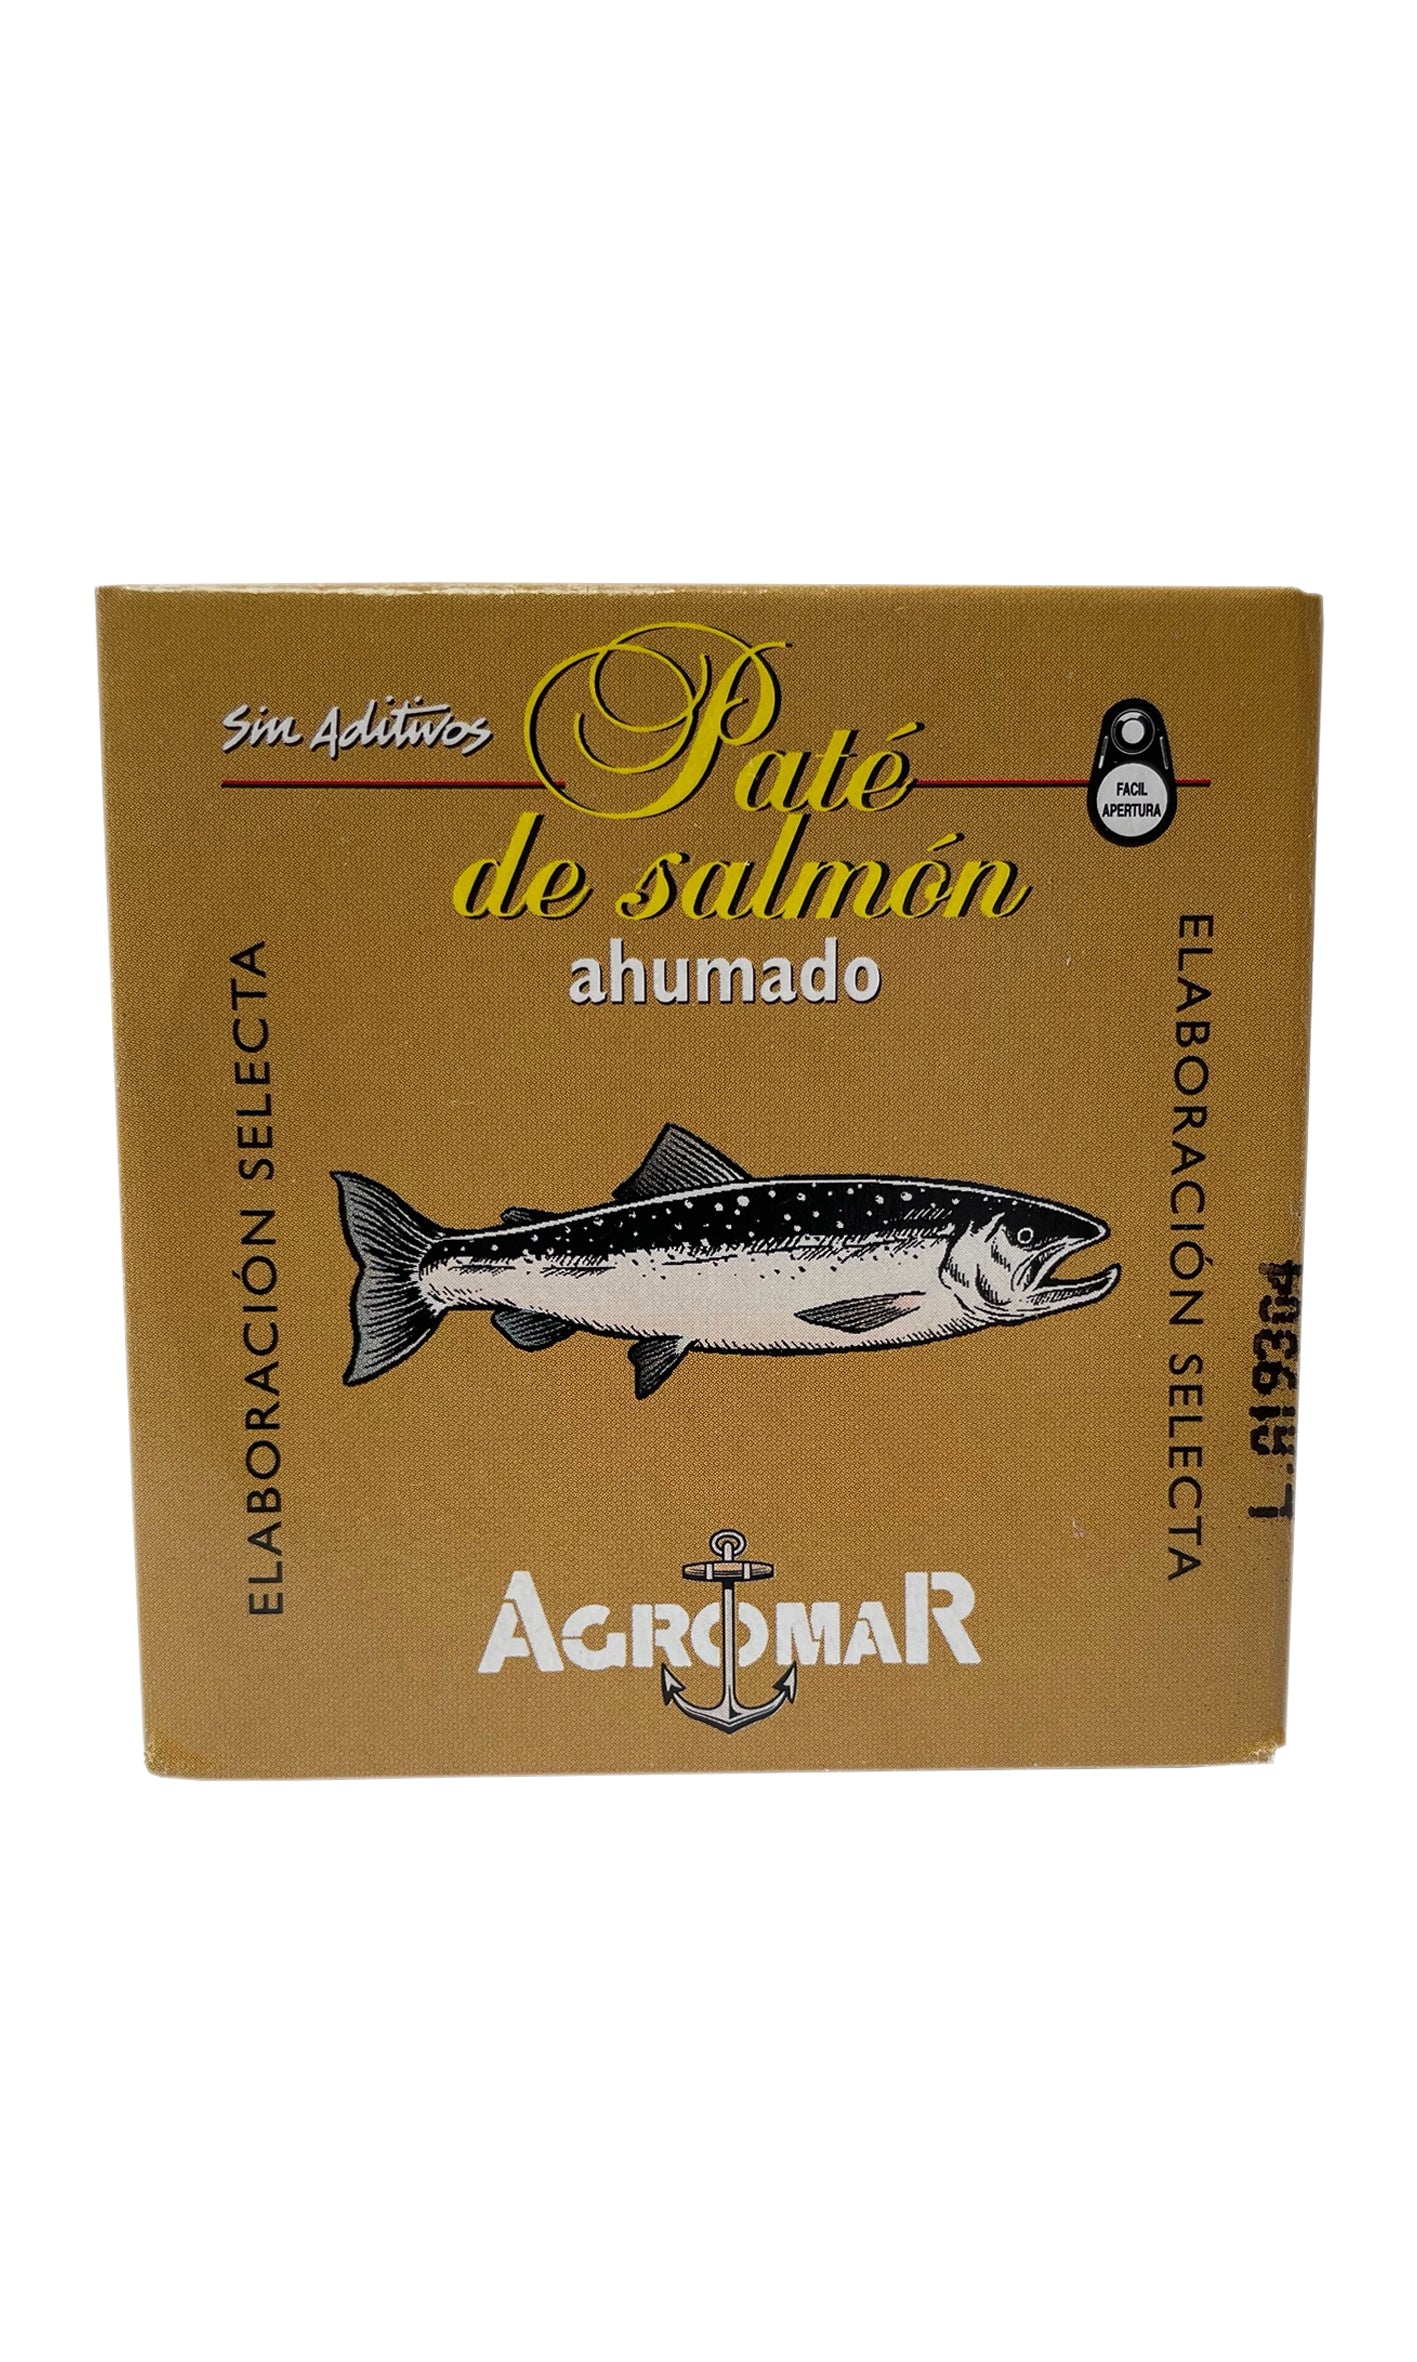 Agromar - Smoked Salmon Paté - 100g